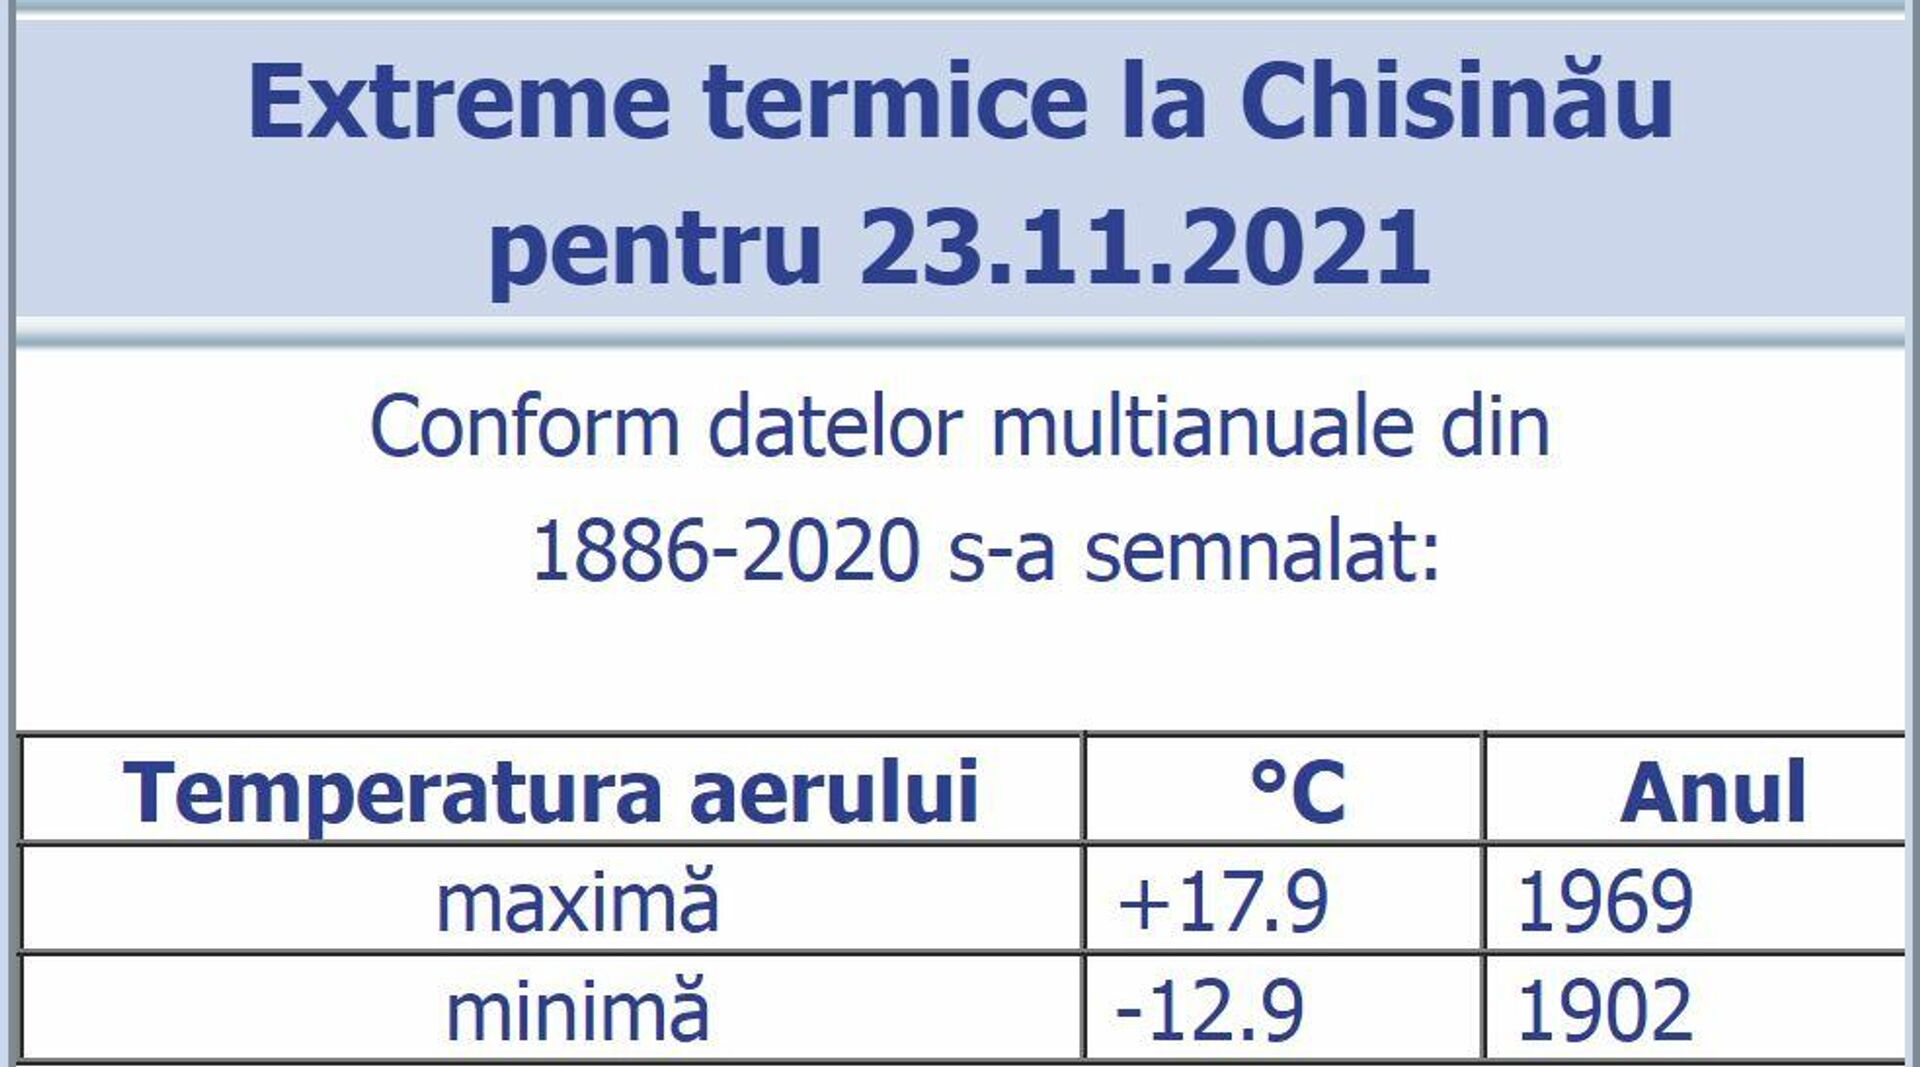 Extremele termice pentru ziua de 23 noiembrie, înregistrate la Chișinău în perioada 1886-2020.  - Sputnik Moldova, 1920, 22.11.2021